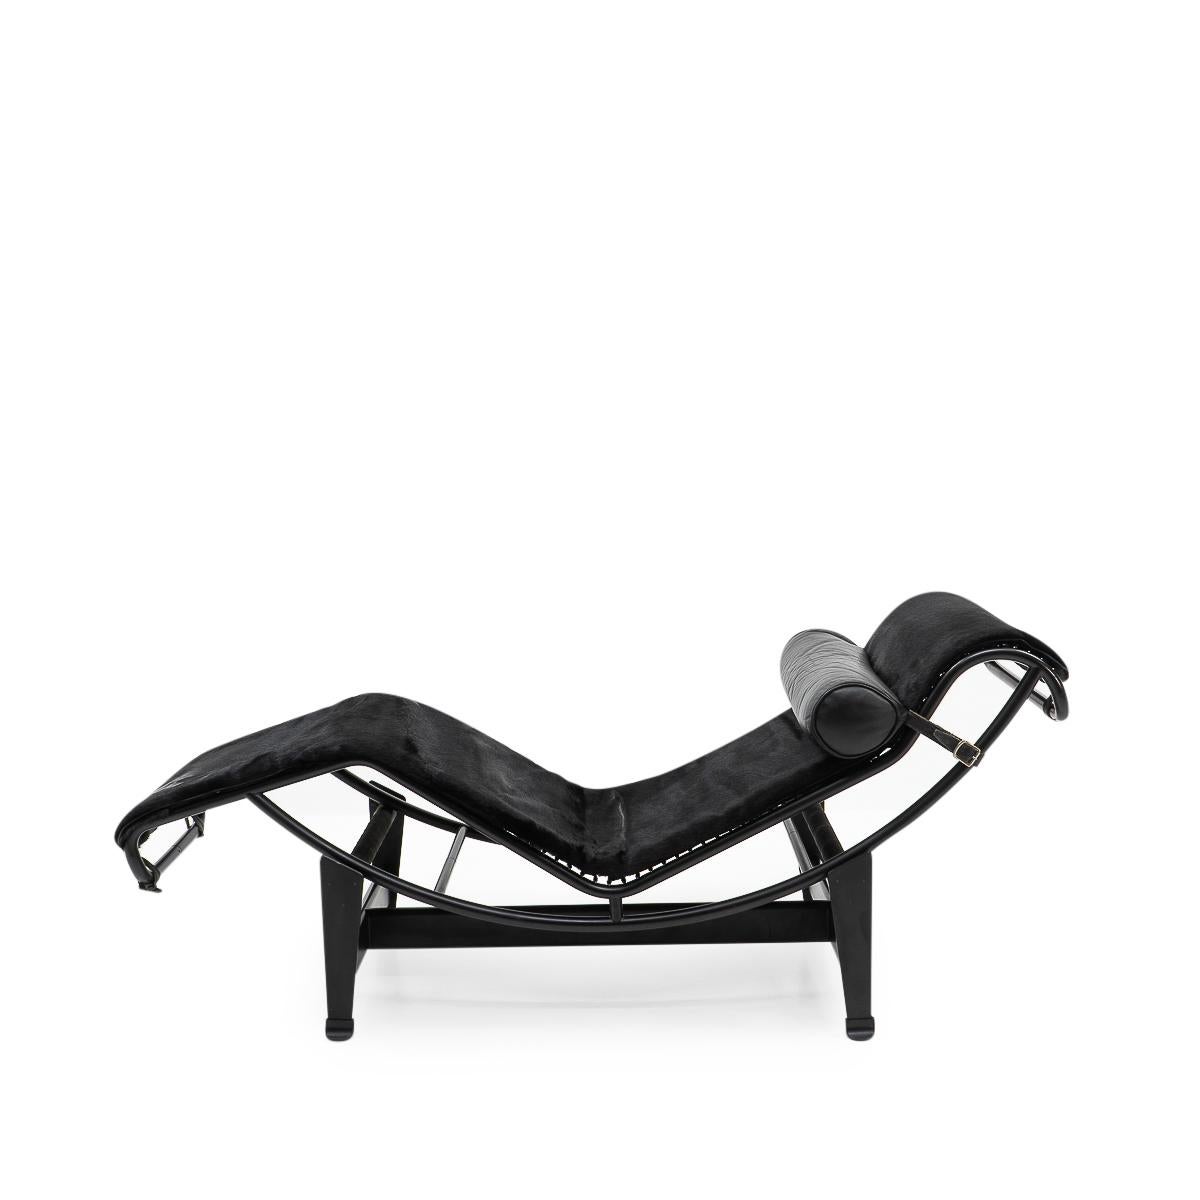 La pièce la plus connue de l'architecte d'origine suisse Le Corbusier (Charles-Edouard Jeanneret) est probablement la chaise-longue modèle LC4. Le Corbusier n'a guère besoin d'être présenté. Ses œuvres vont du mobilier aux bâtiments, en passant par